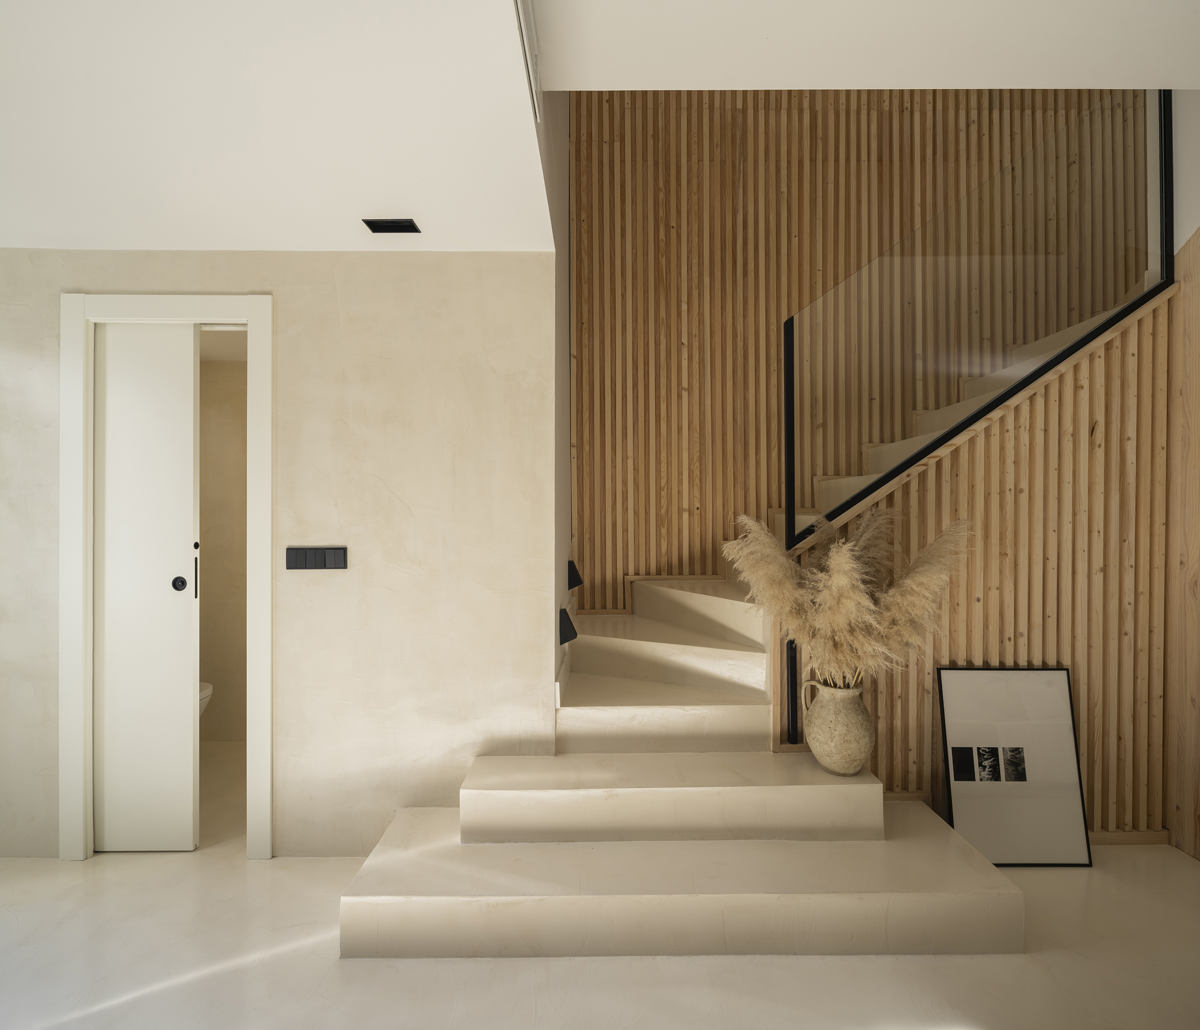 Granada'daki Jara projesinde merdivenler, duvarlar ve zeminlerde mikro çimento.